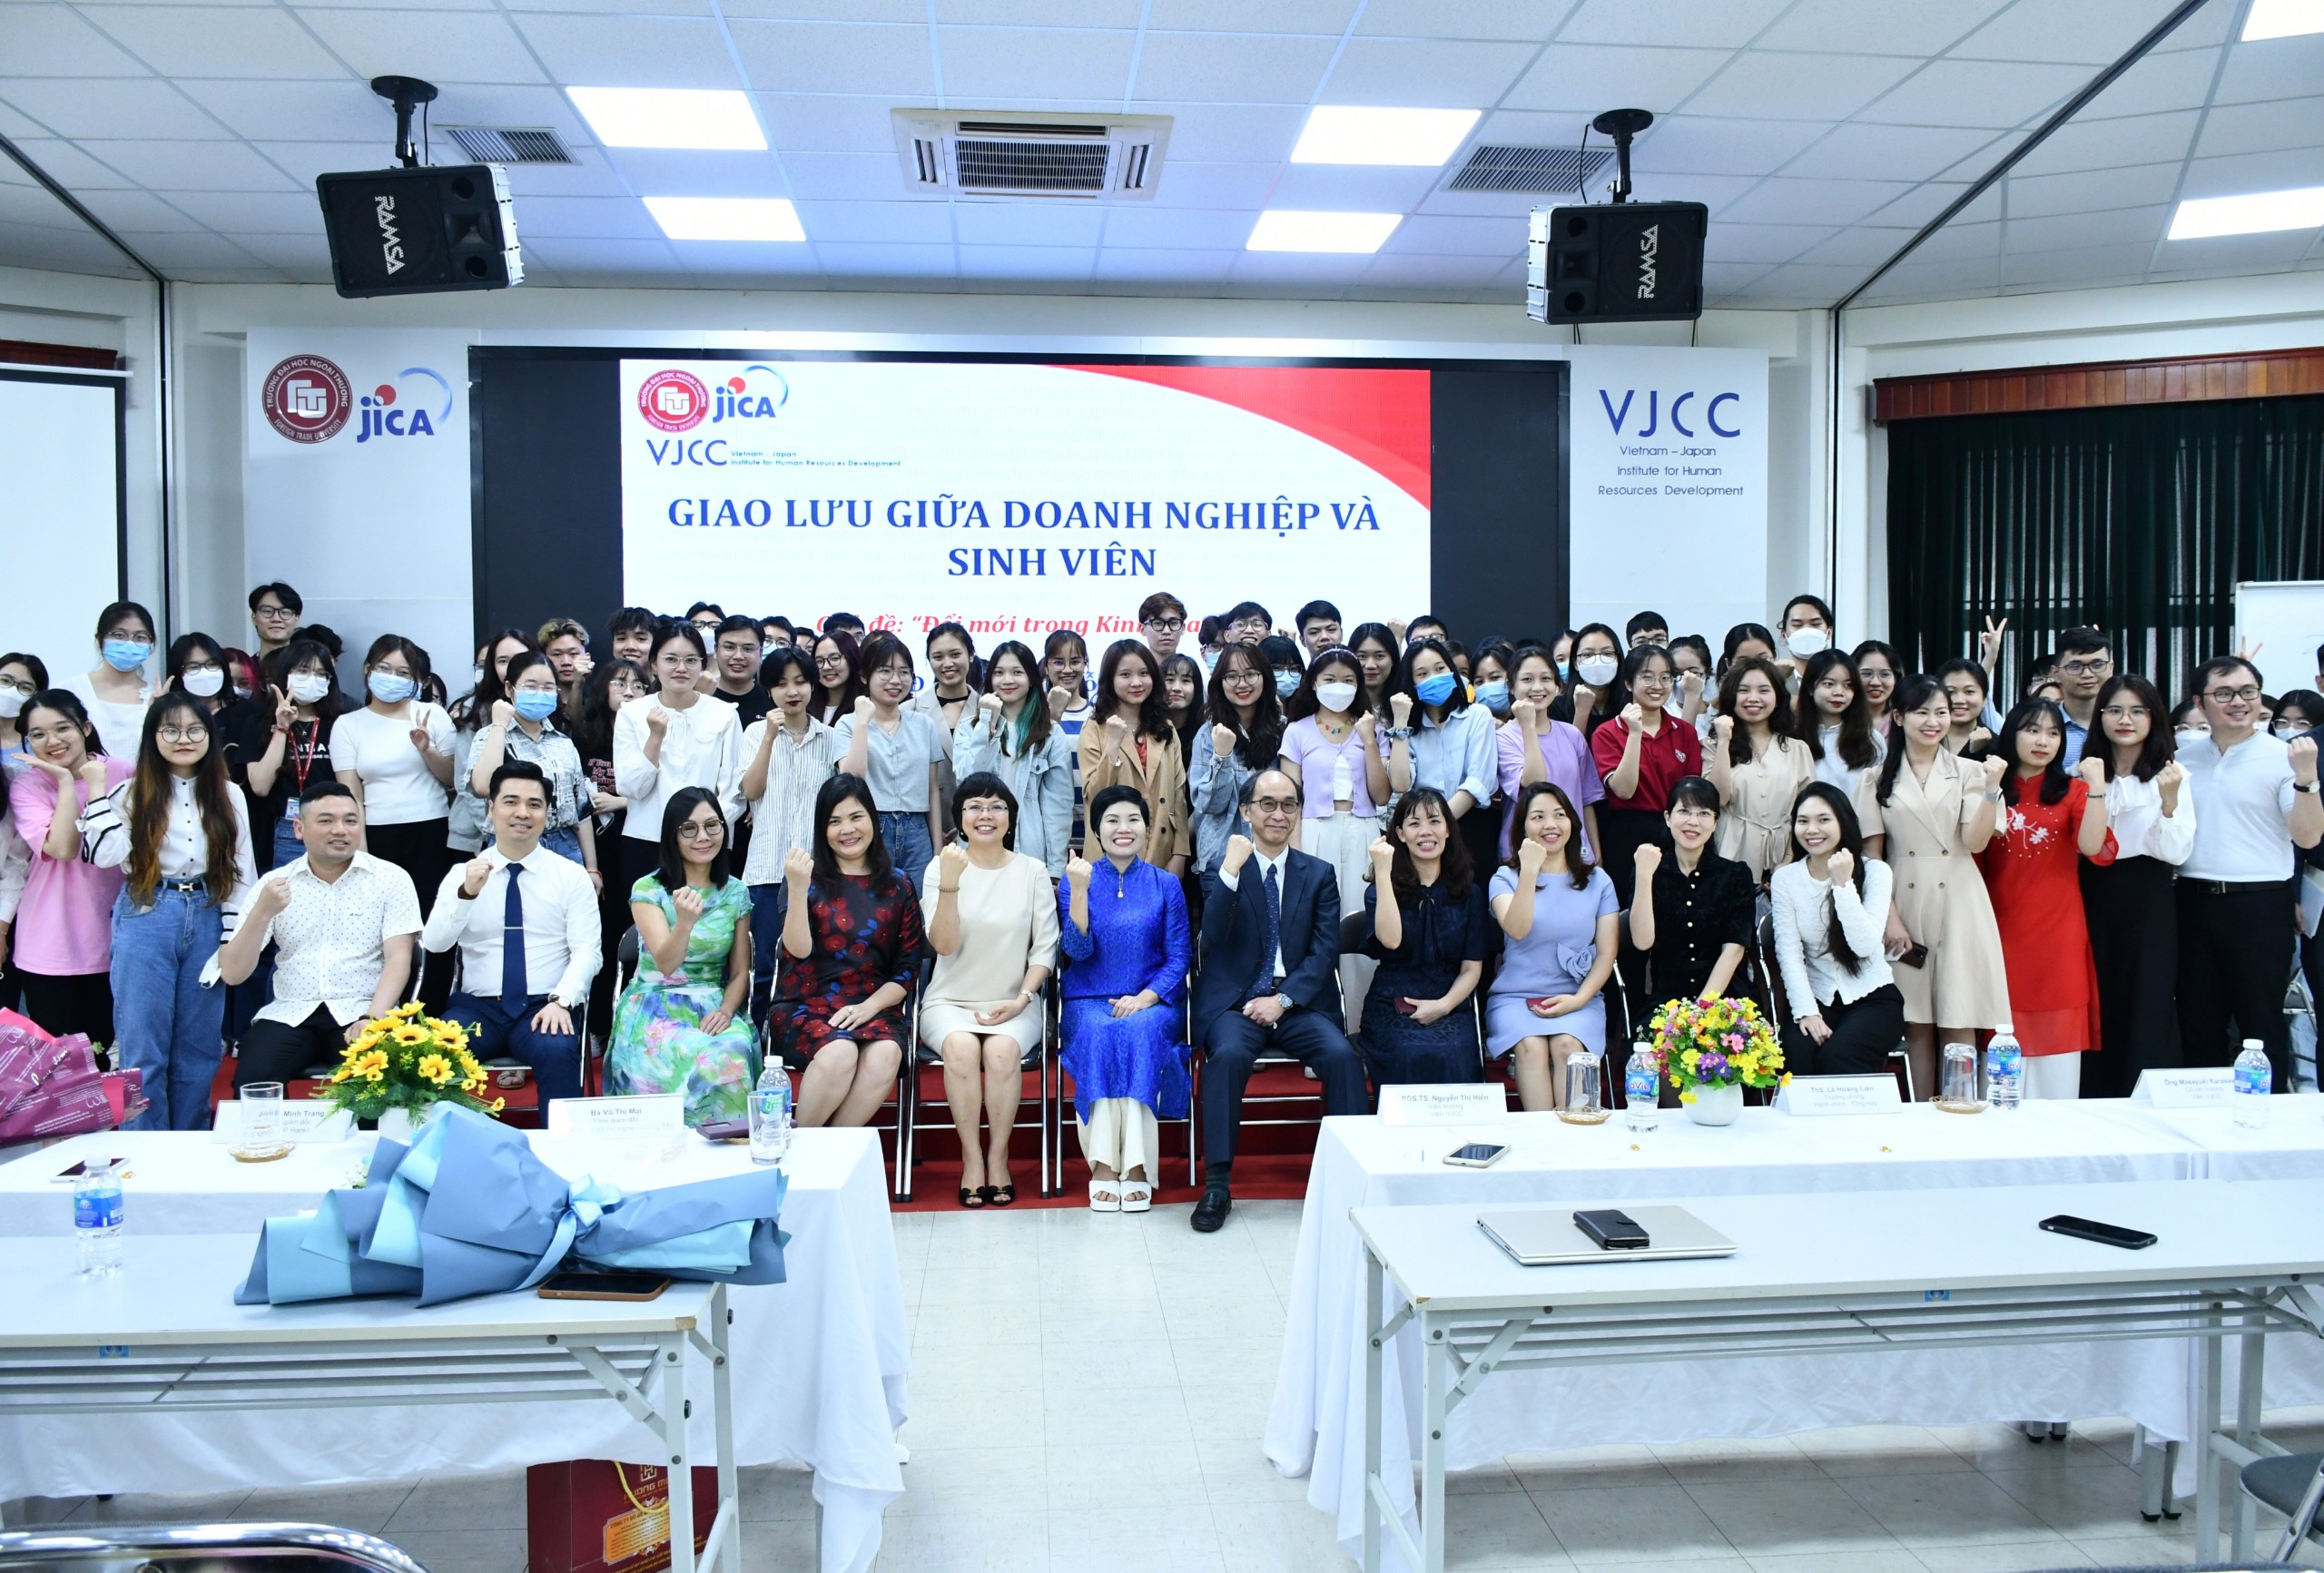 VJCCインスティチュート: 日本式国際ビジネス学士課程で奨学金の授与式典が開催されました。